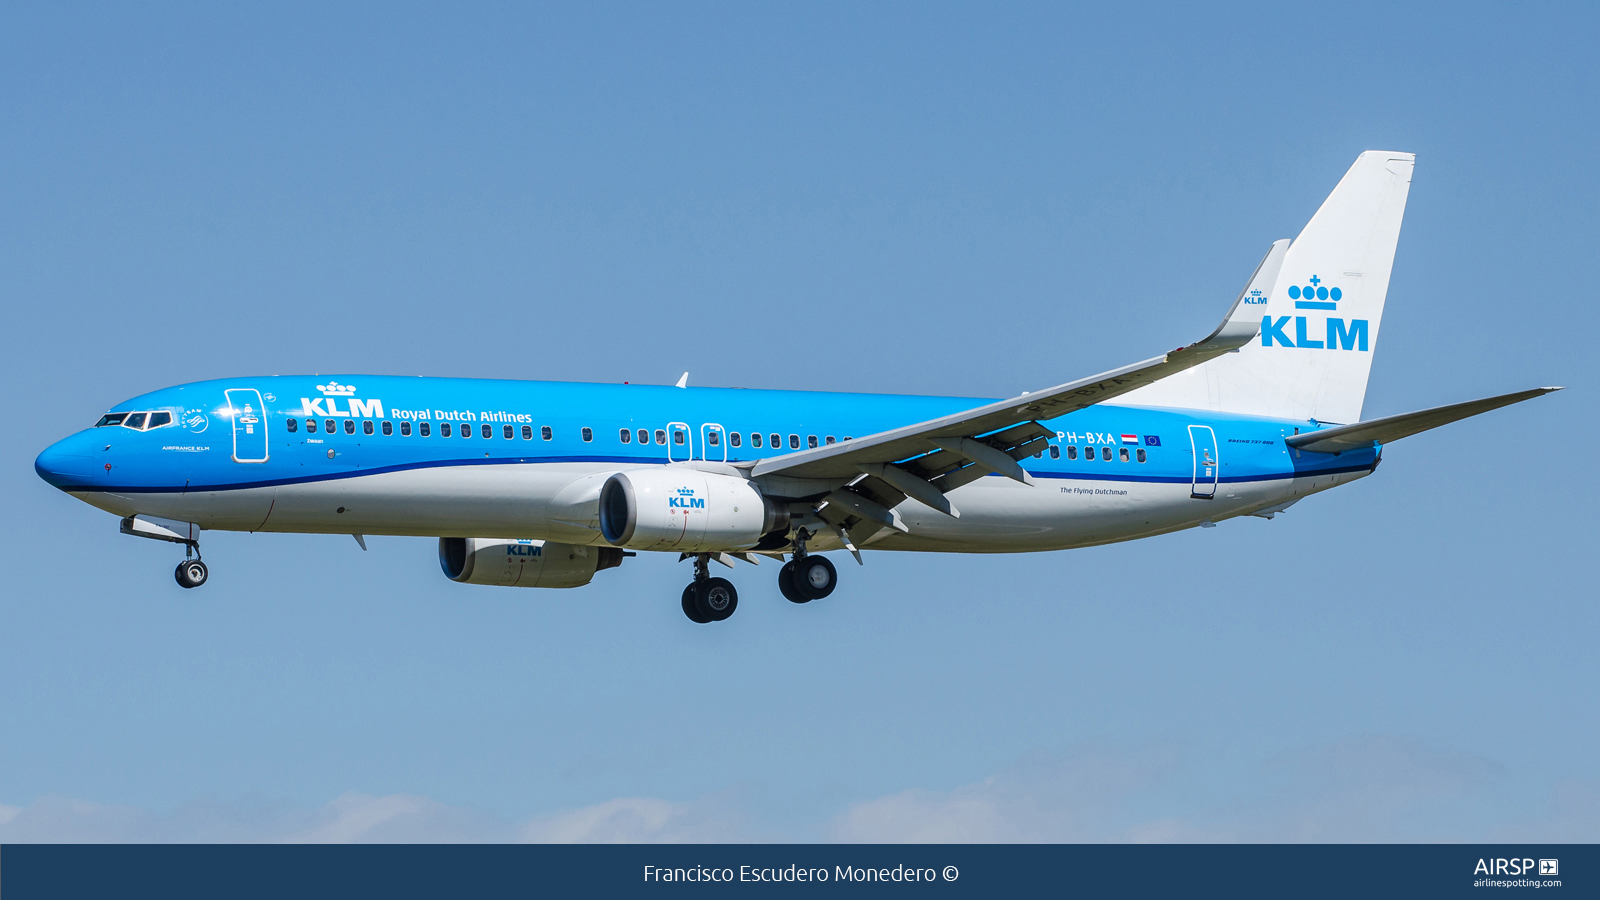 KLM  Boeing 737-800  PH-BXA